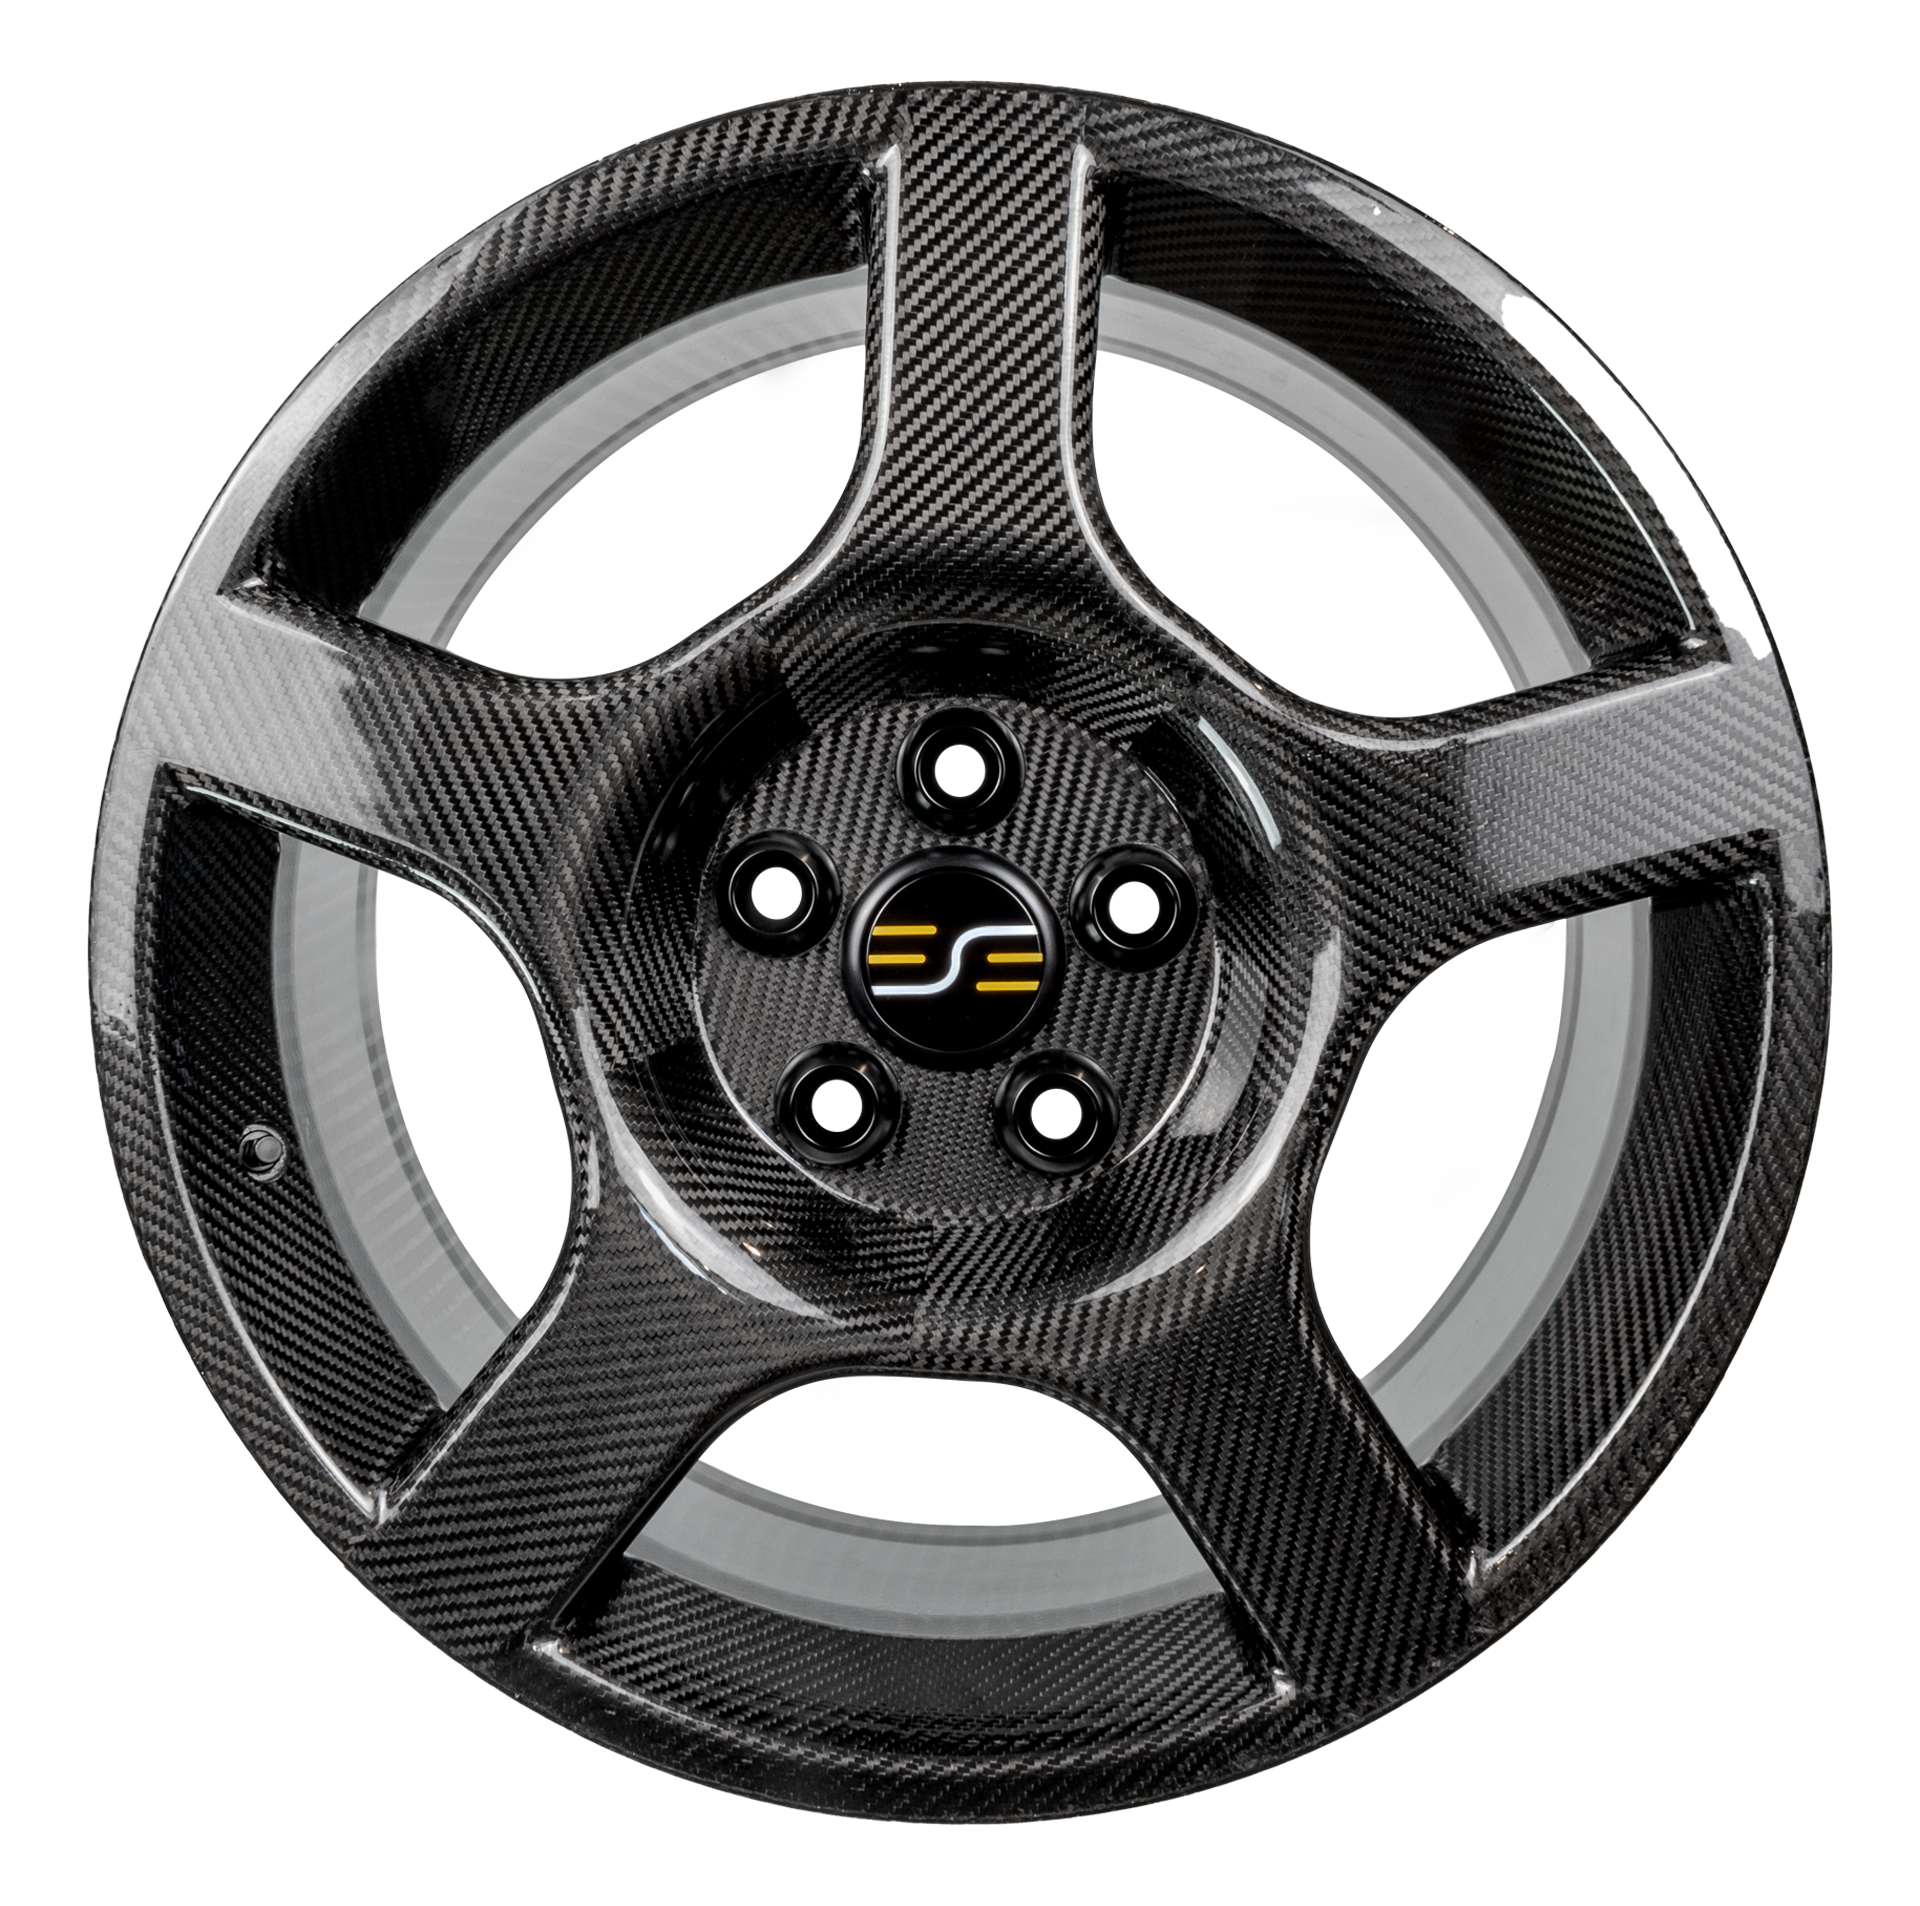 The E2 carbon fiber wheel.